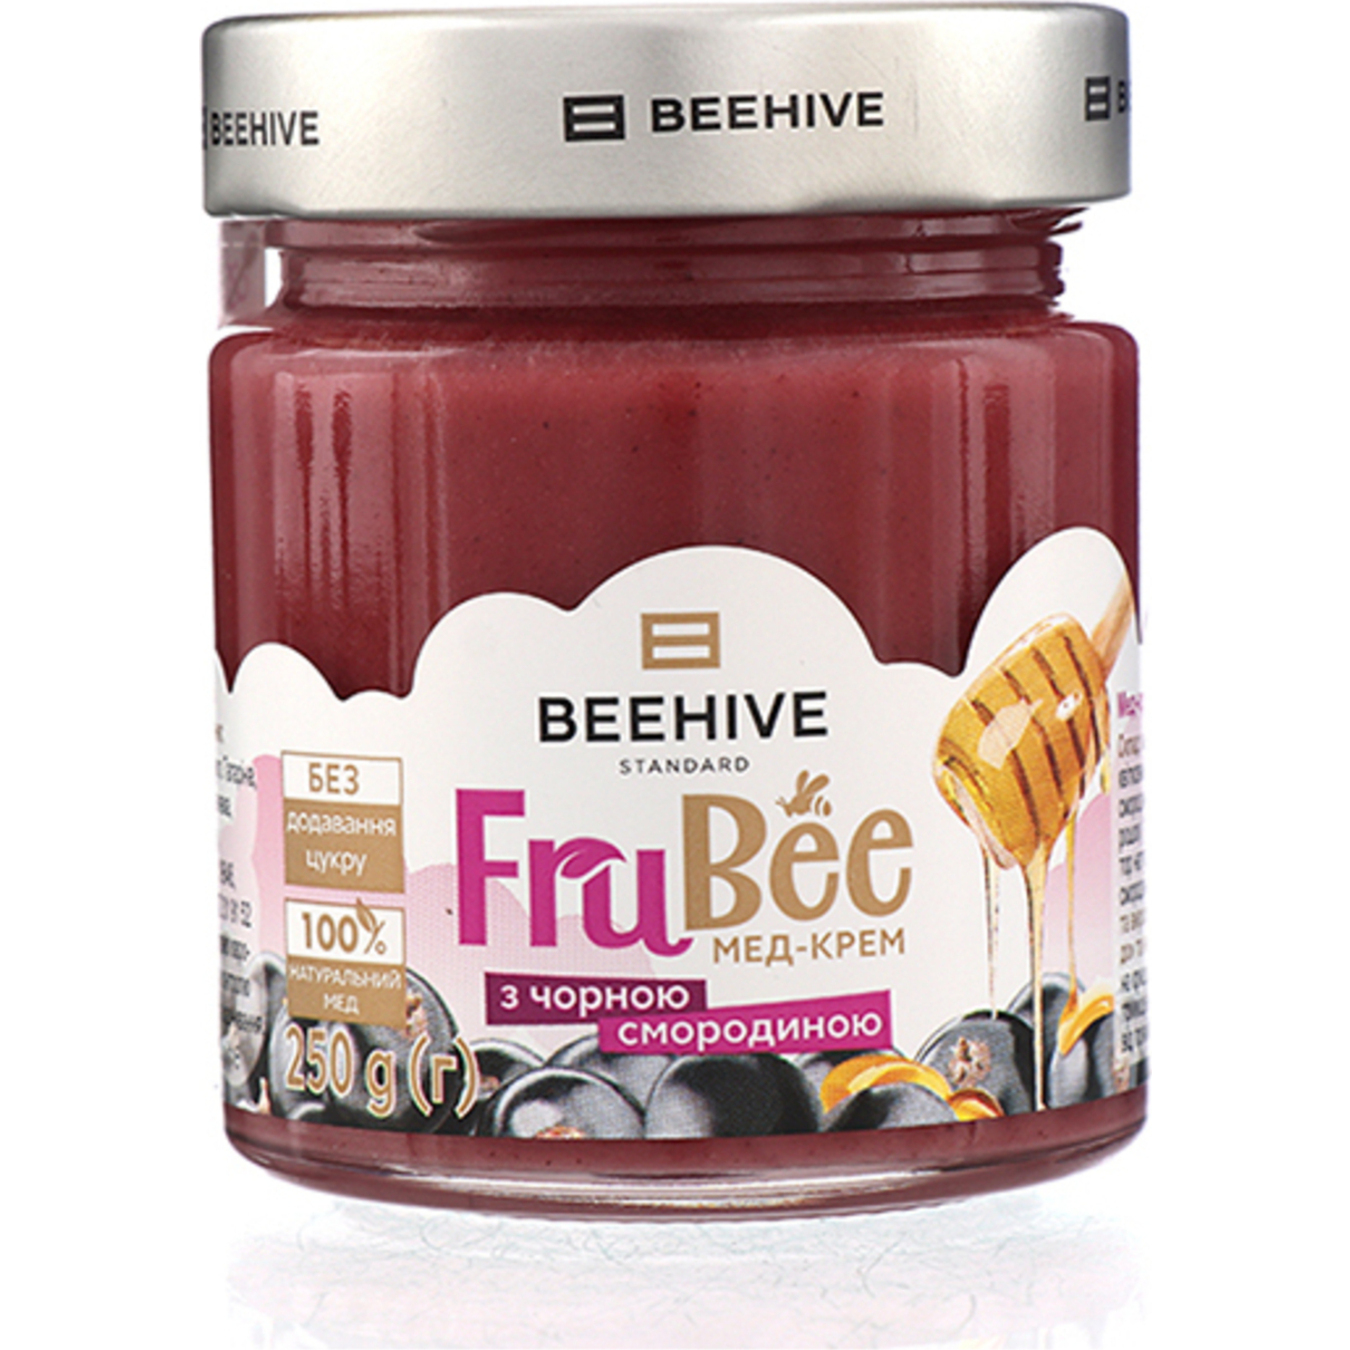 Beehive Honey-cream Currant 250g